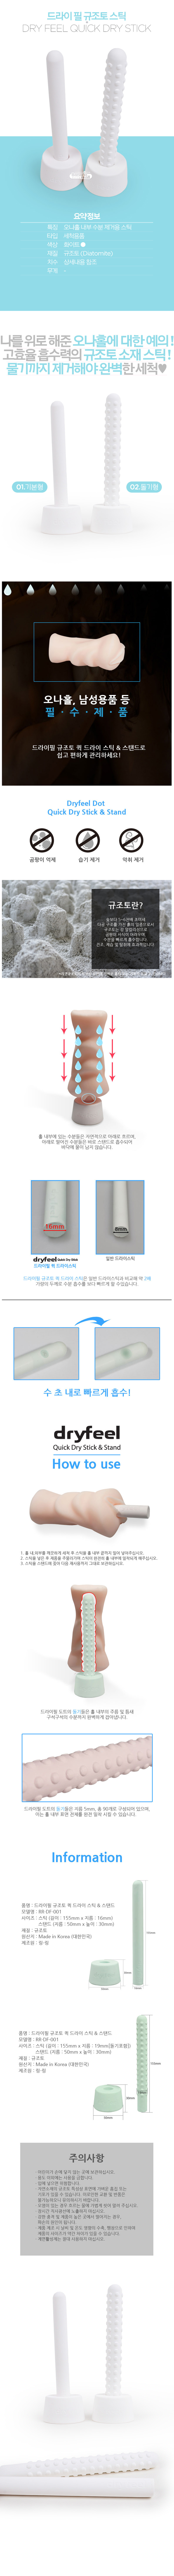 [오나홀 건조] 드라이 필 규조토 스틱(Dry Feel Quick Dry Stick)